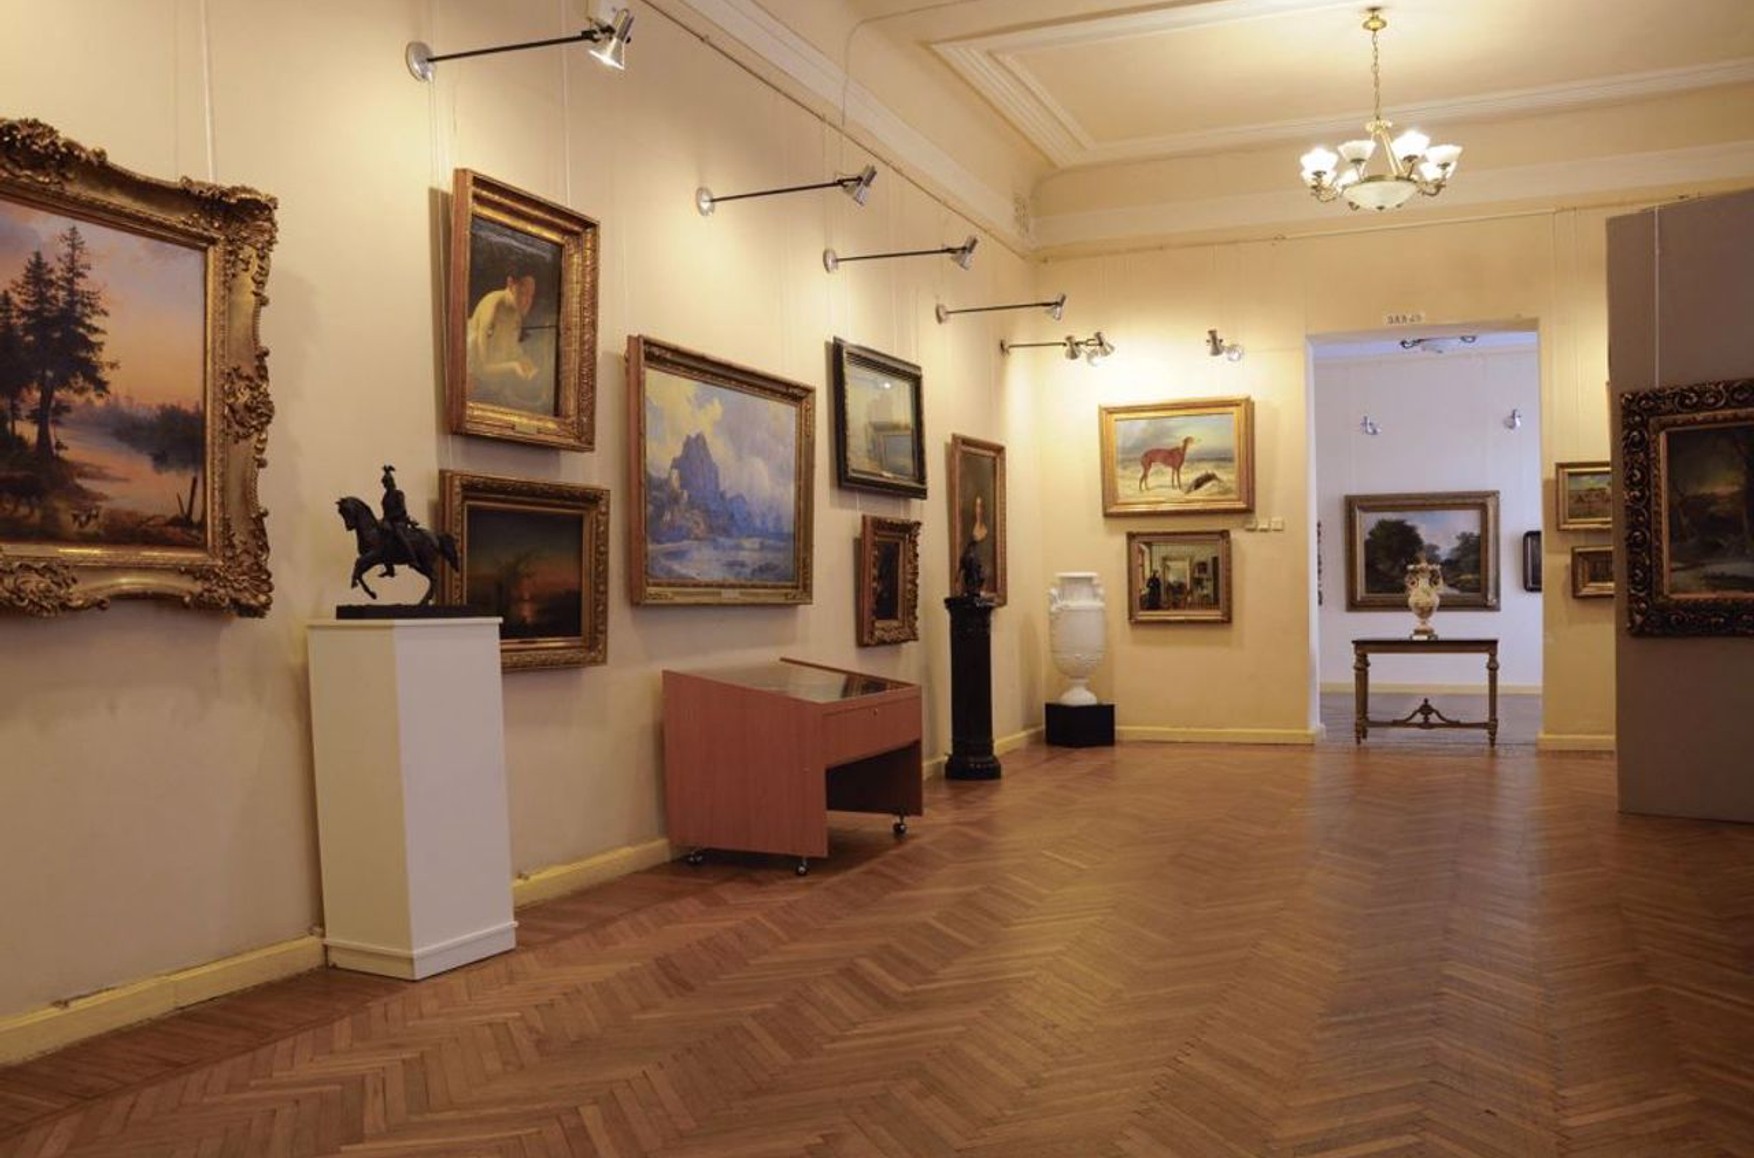 Российские военные разграбили Херсонский художественный музей — руководство